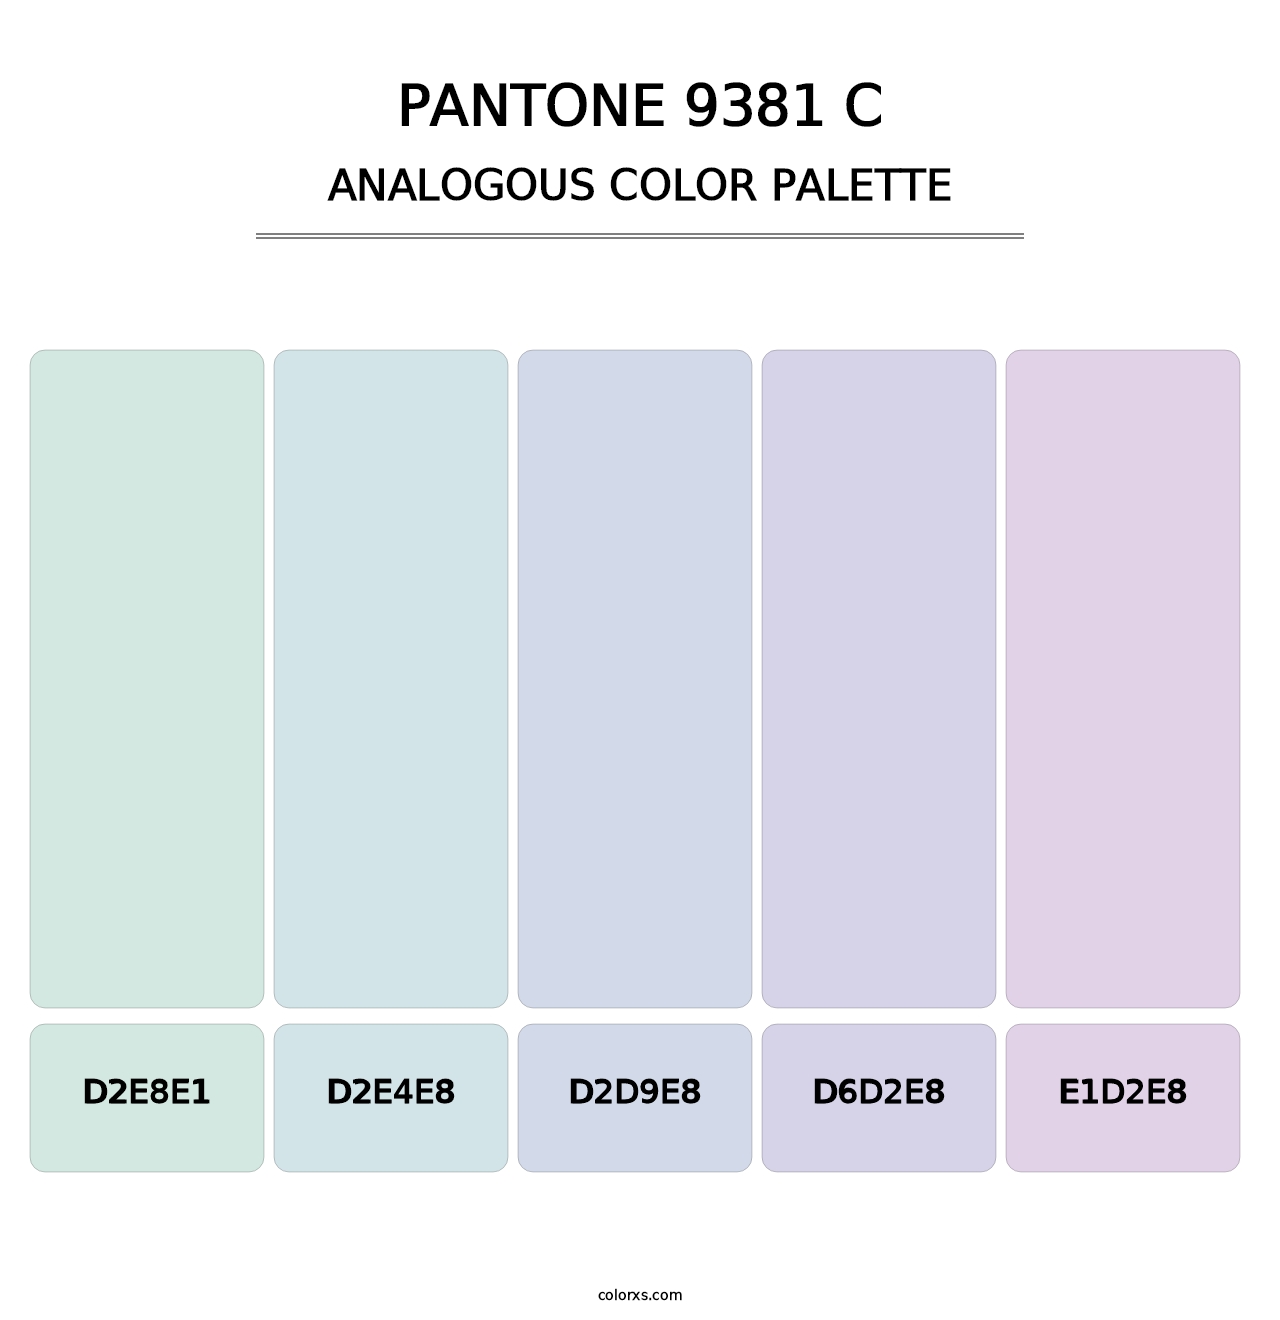 PANTONE 9381 C - Analogous Color Palette